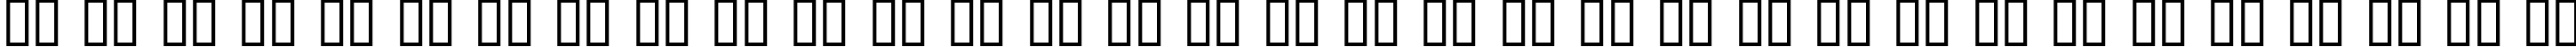 Пример написания русского алфавита шрифтом Cuomotype